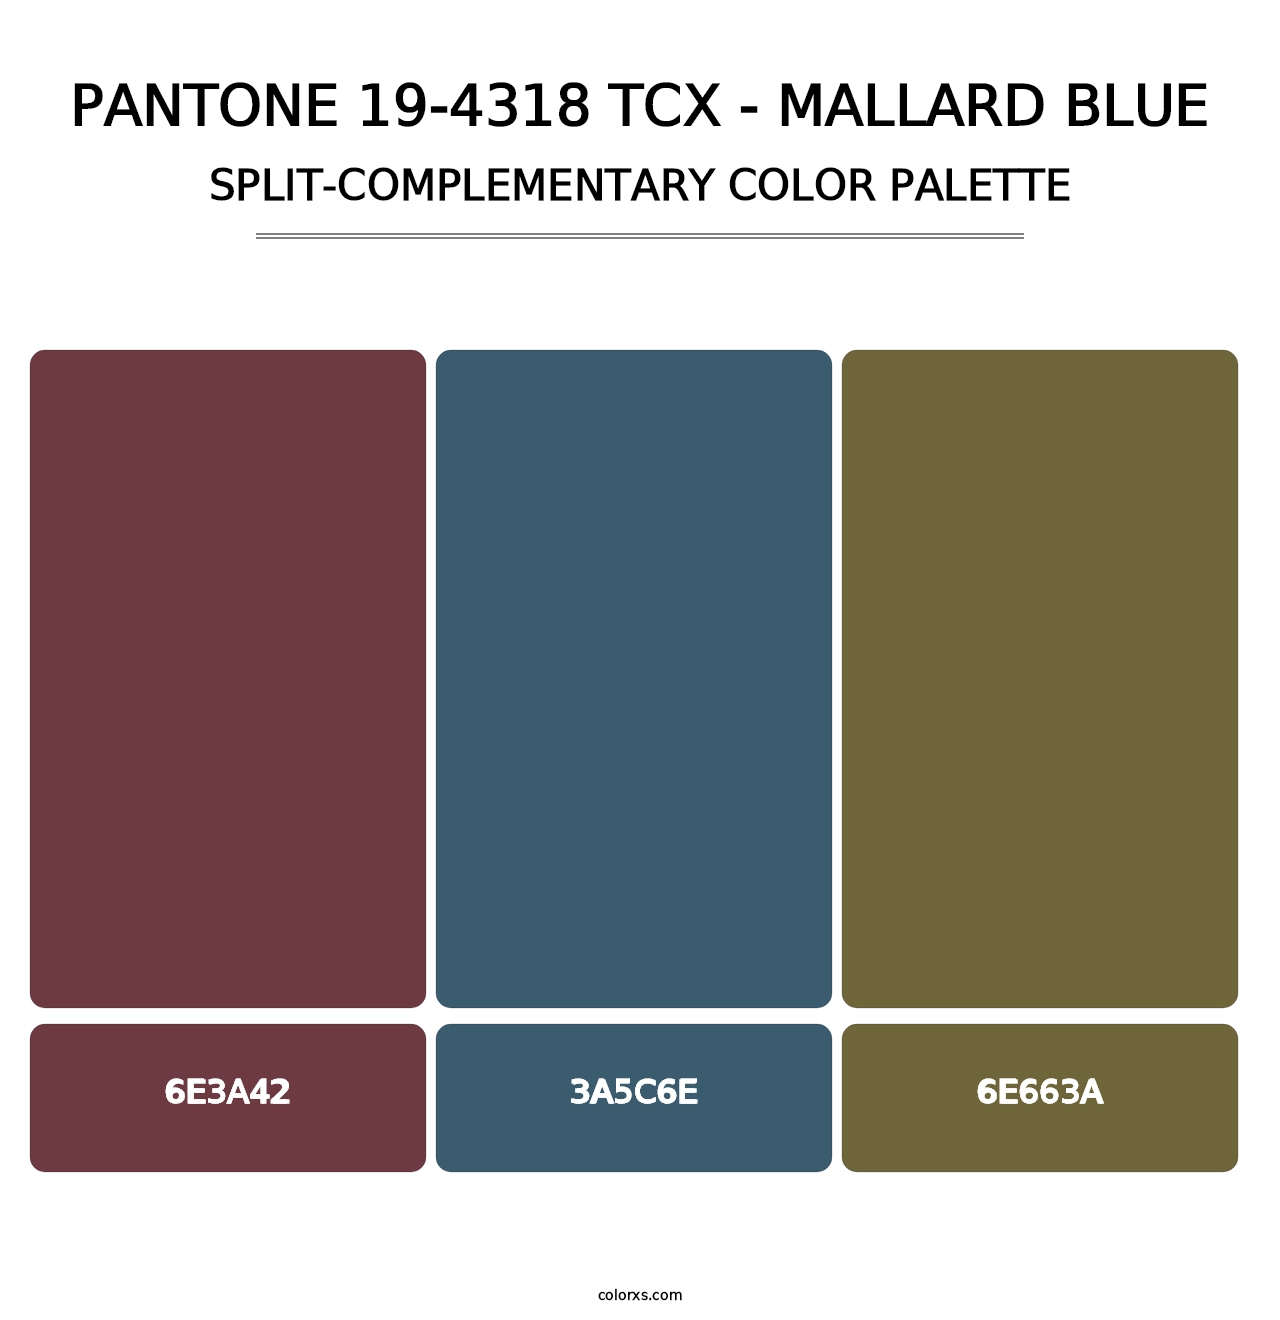 PANTONE 19-4318 TCX - Mallard Blue - Split-Complementary Color Palette